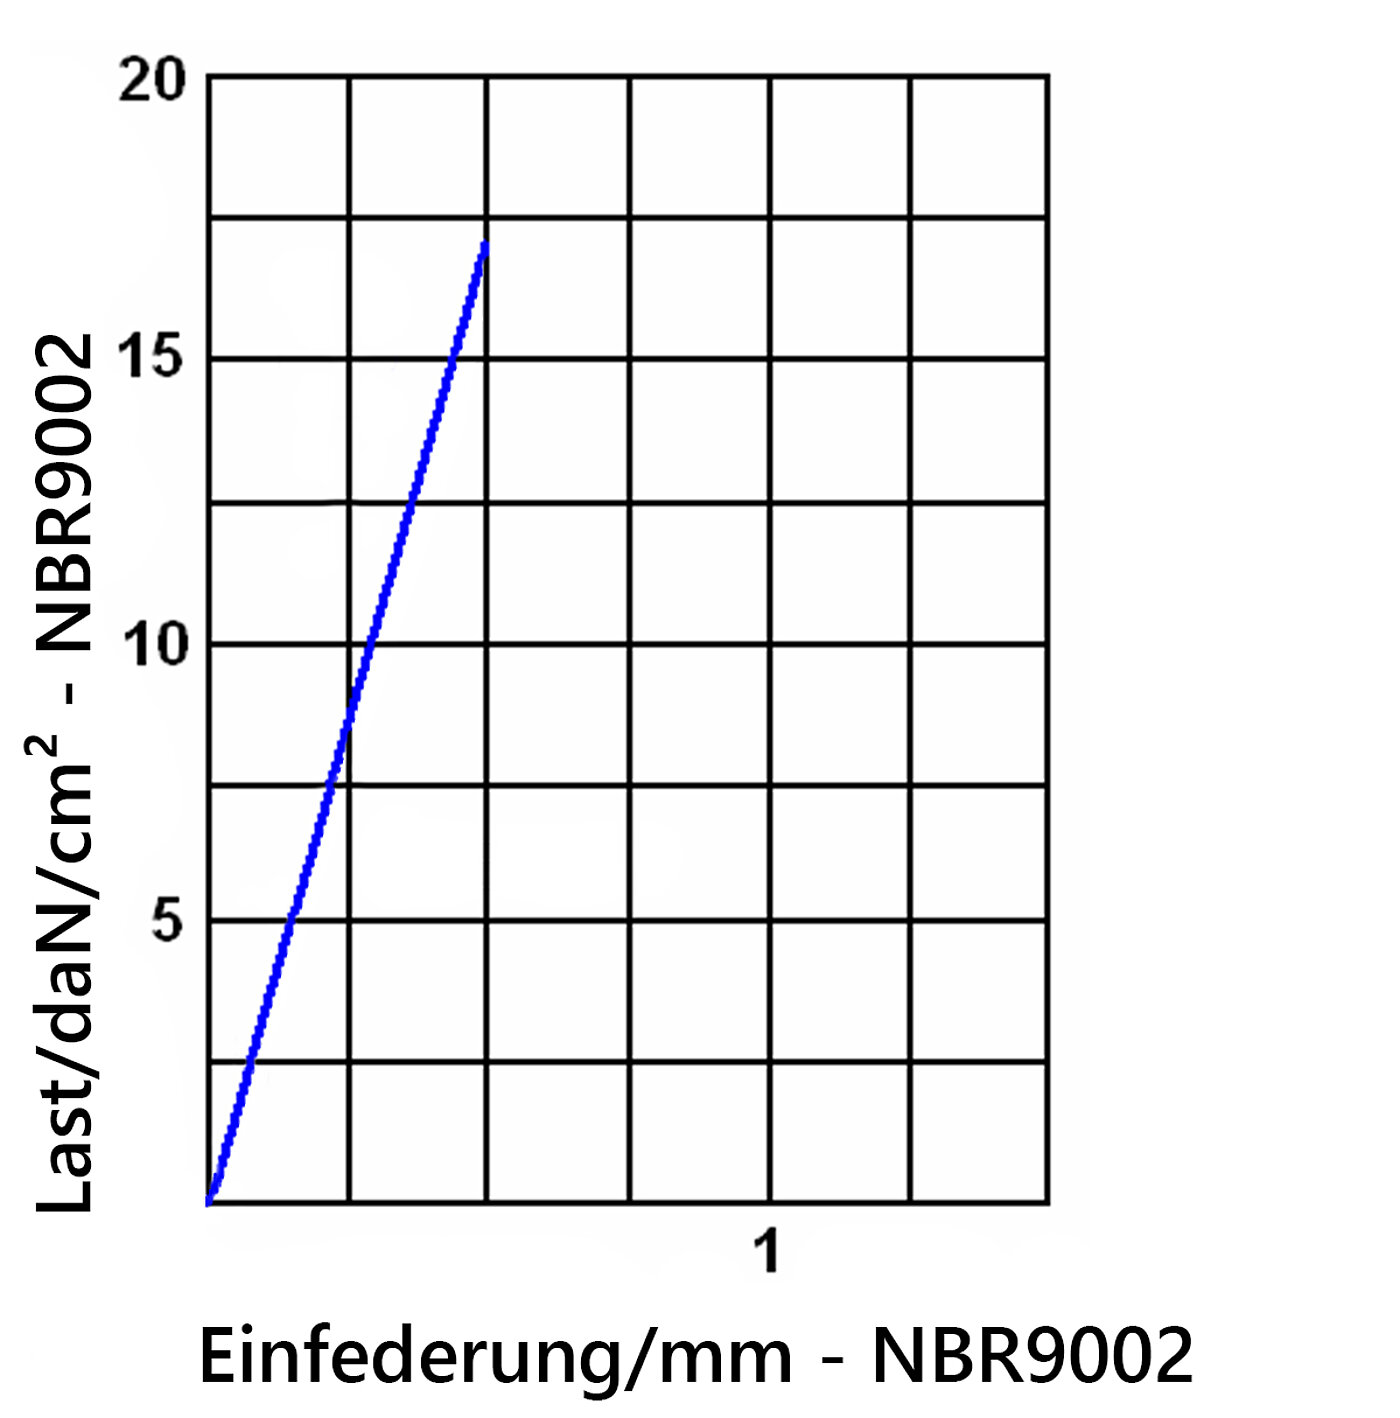 Diagramm der Einfederung der Elastomerplatte NBR9002 unter Last